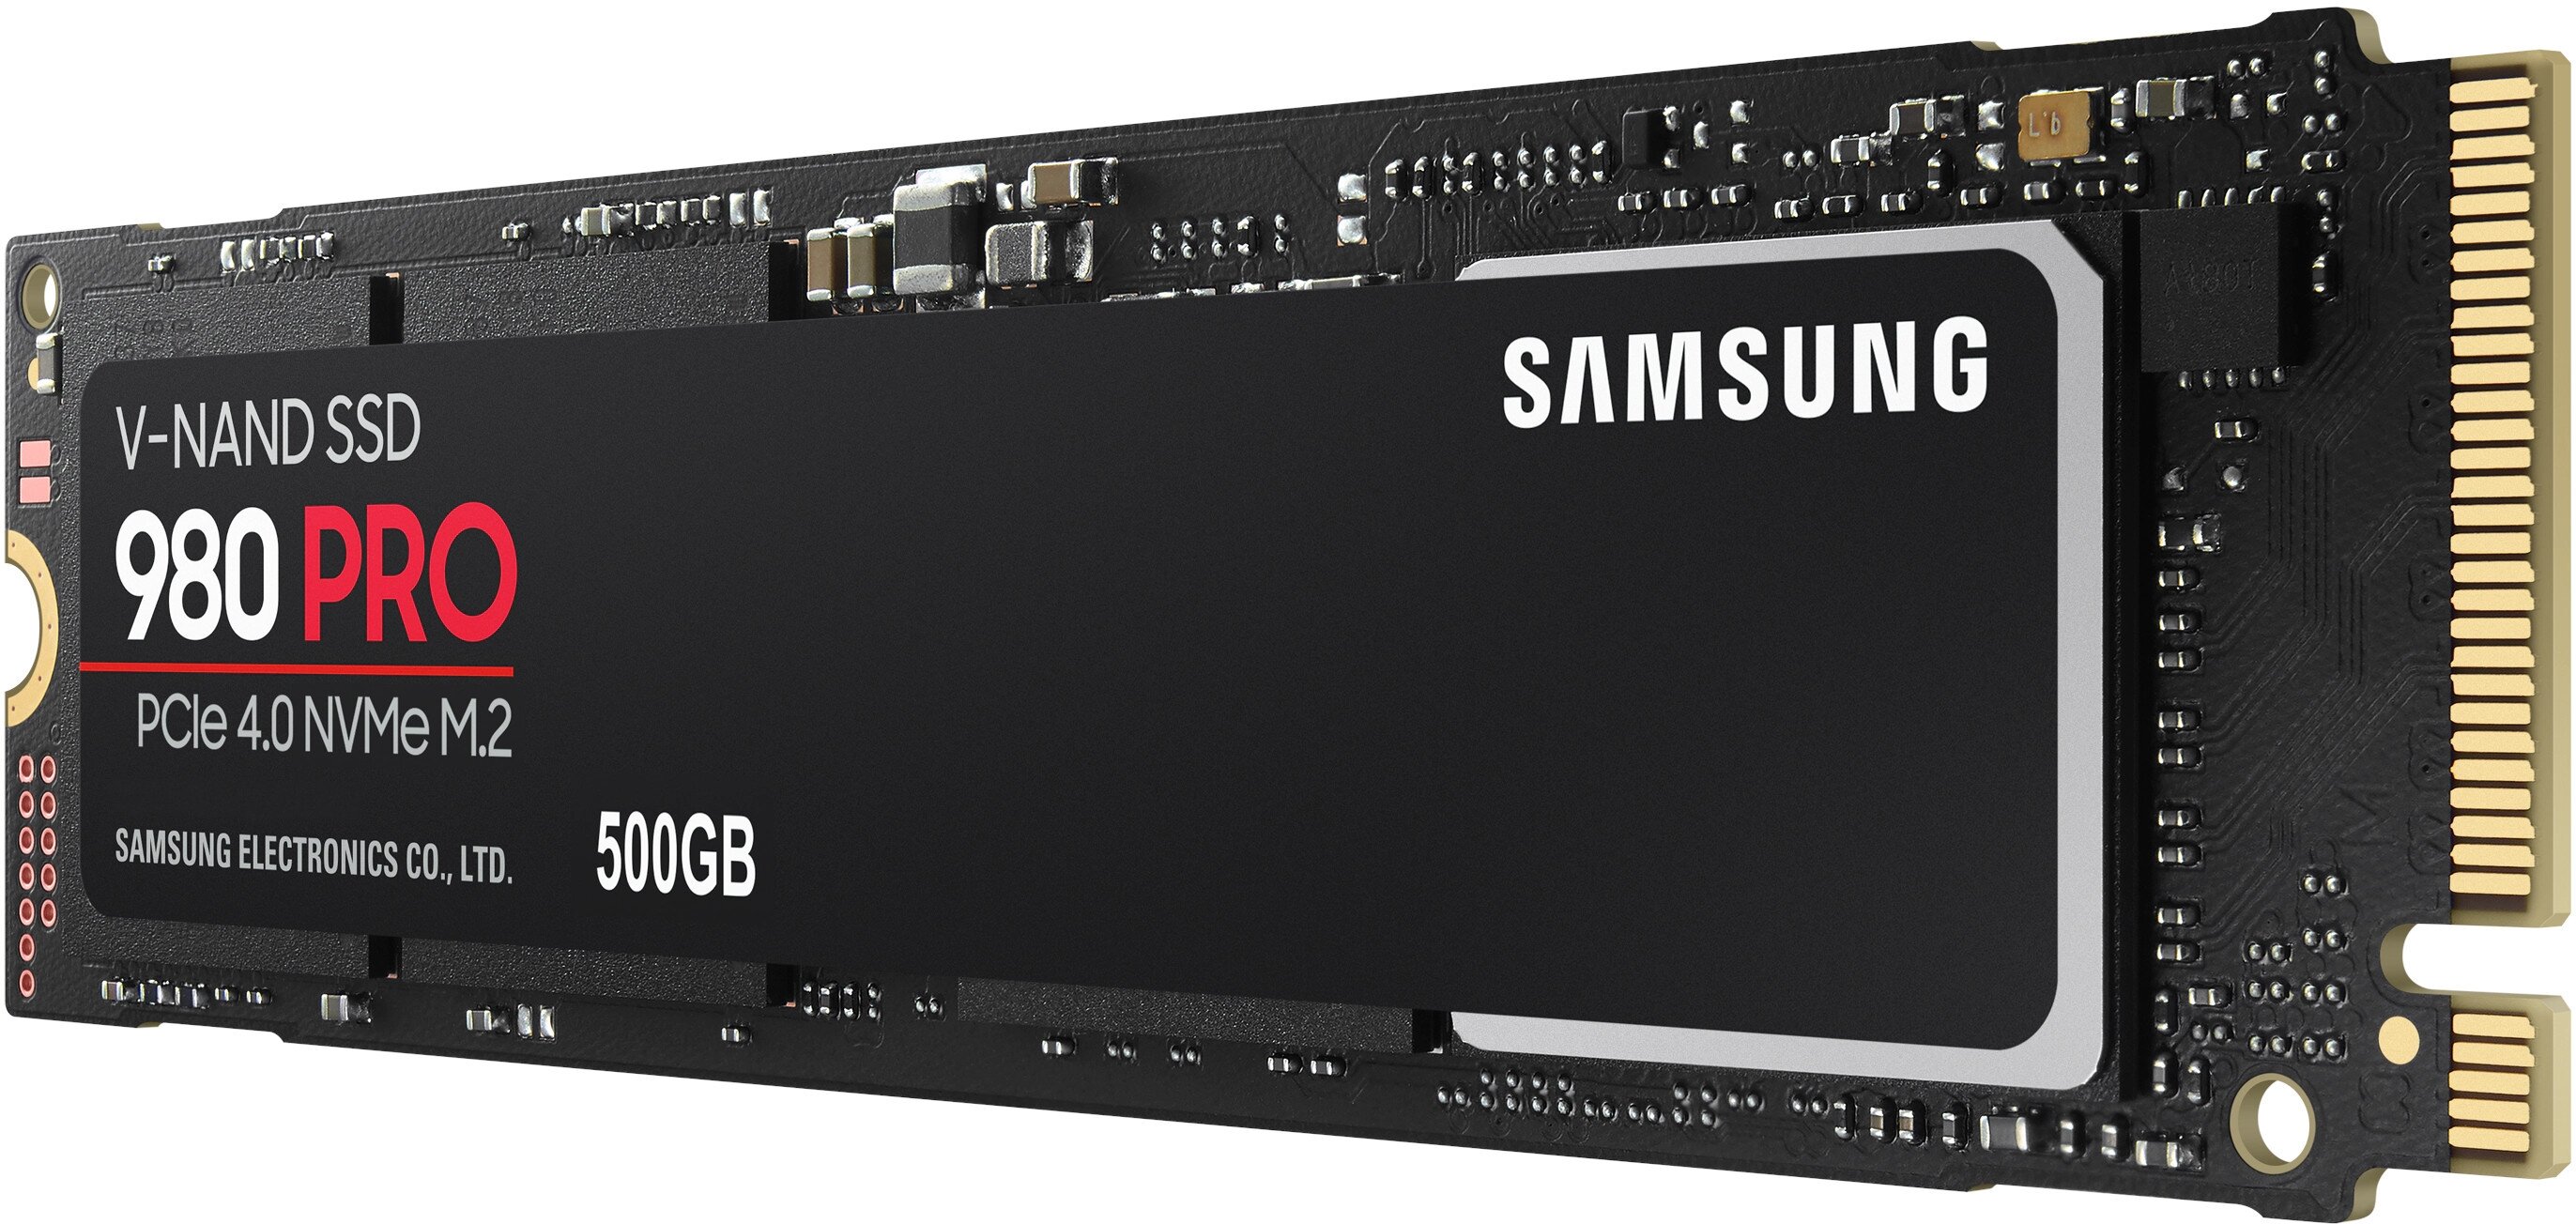 絶対一番安い SAMSUNG 500GB MZ-V8P500B/IT PRO 980 - PCパーツ - www.qiraatafrican.com